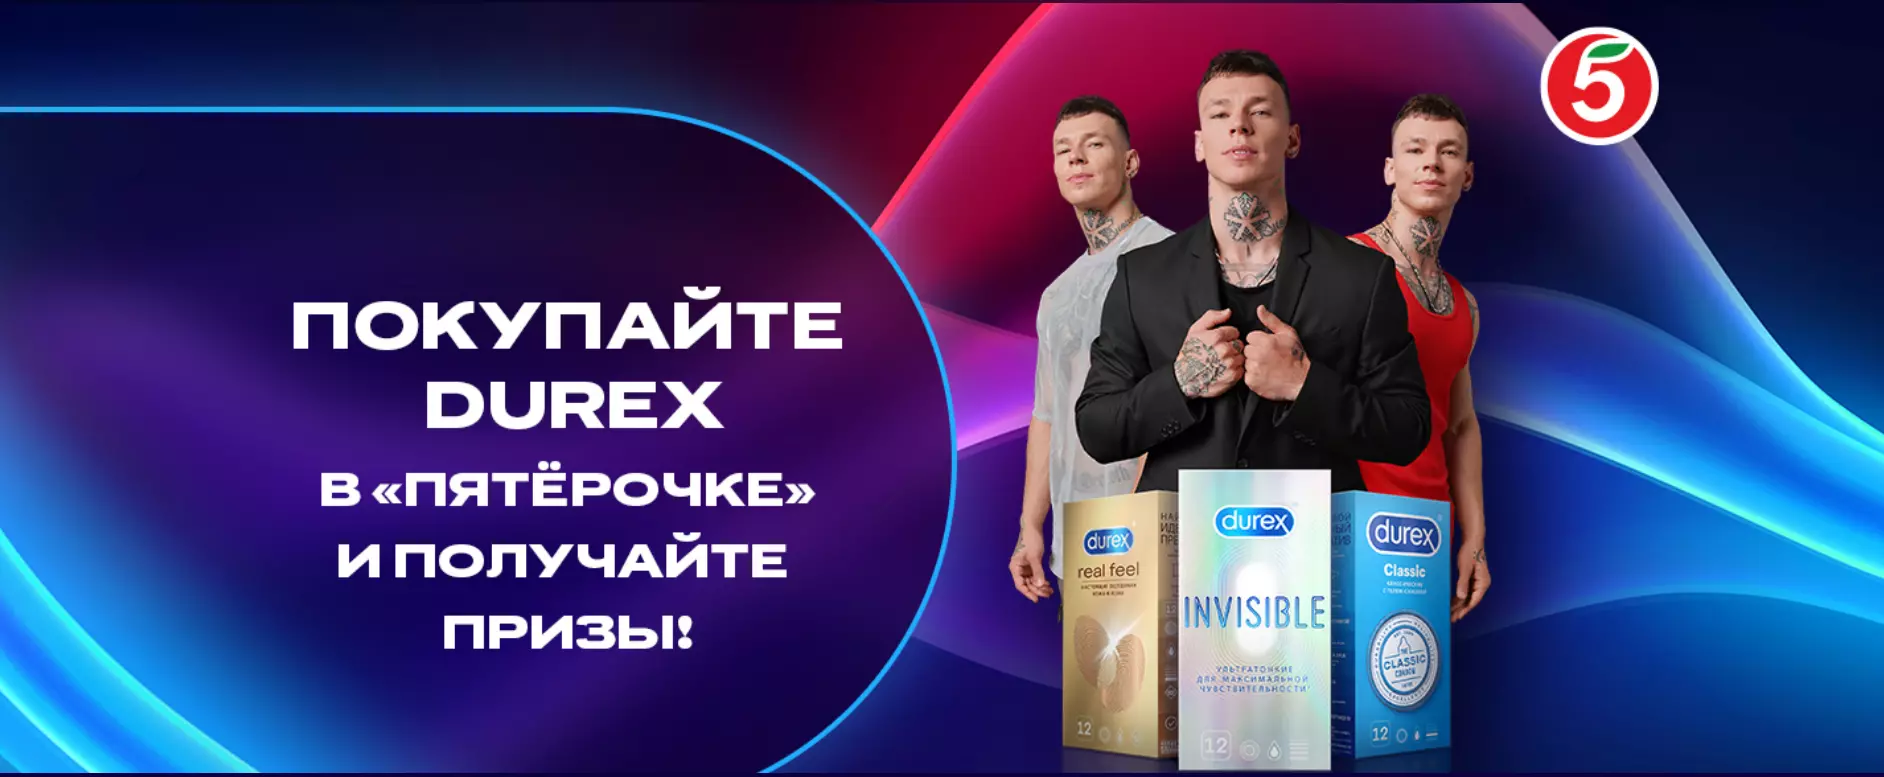 Акция Durex и Пятерочка: «Купи Дюрекс - получай призы!»